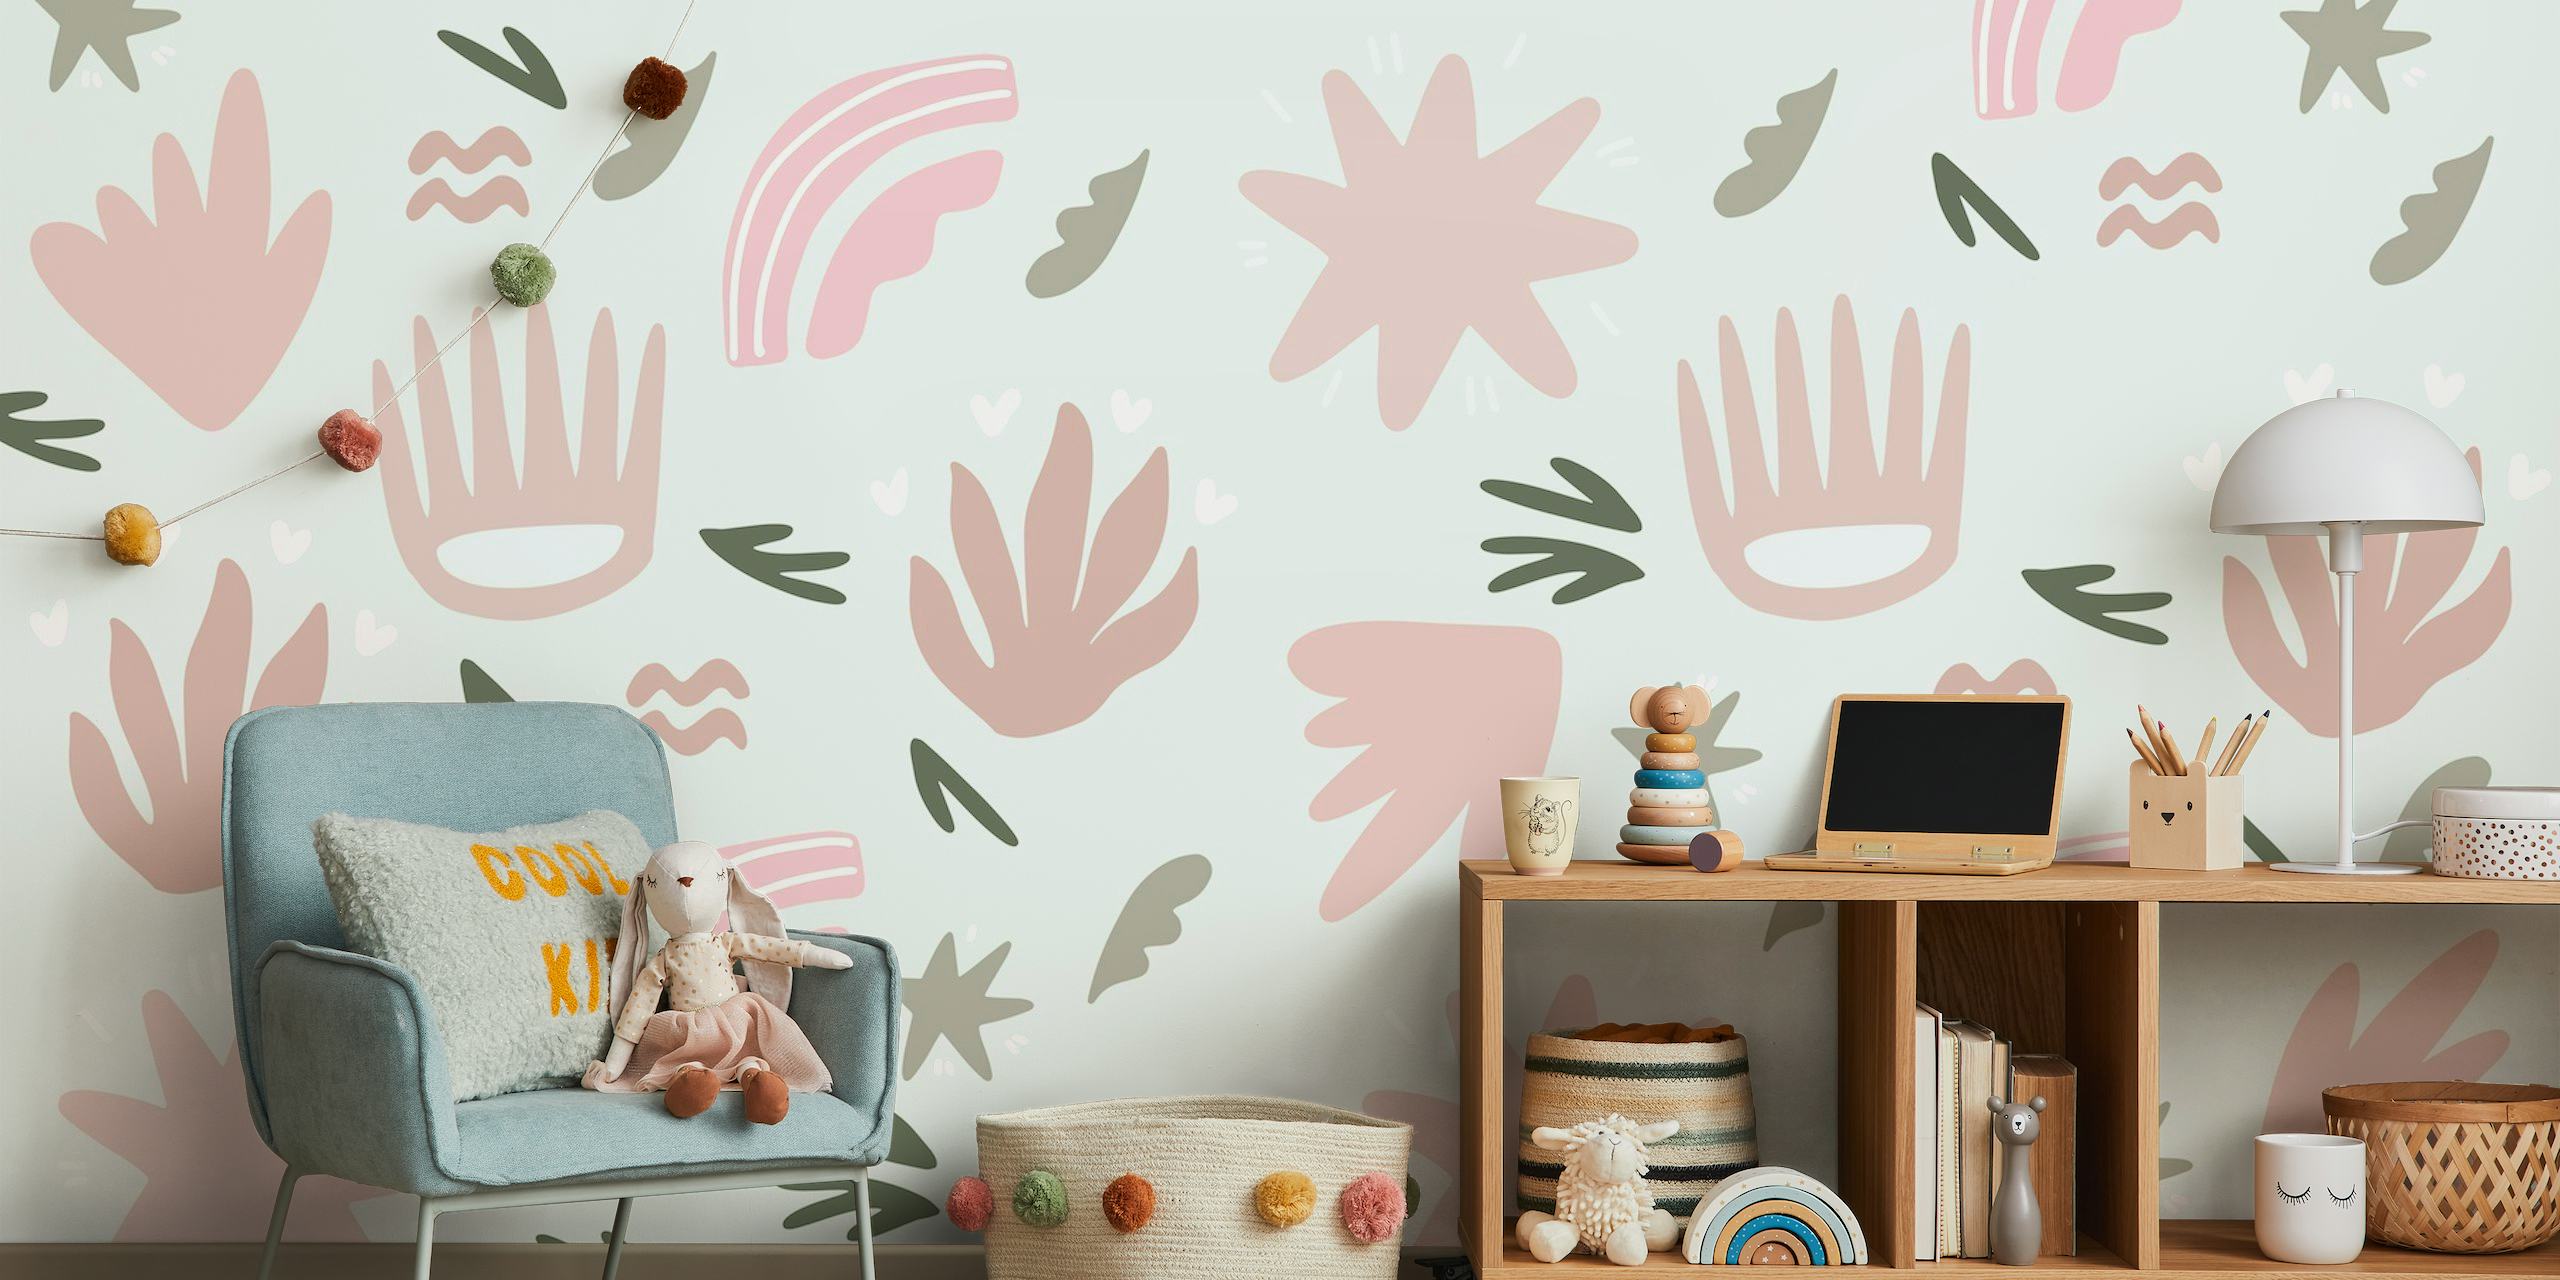 Abstraktes, verspieltes Blumen-Wandbild in sanften Rosa- und Grautönen fürs Kinderzimmer